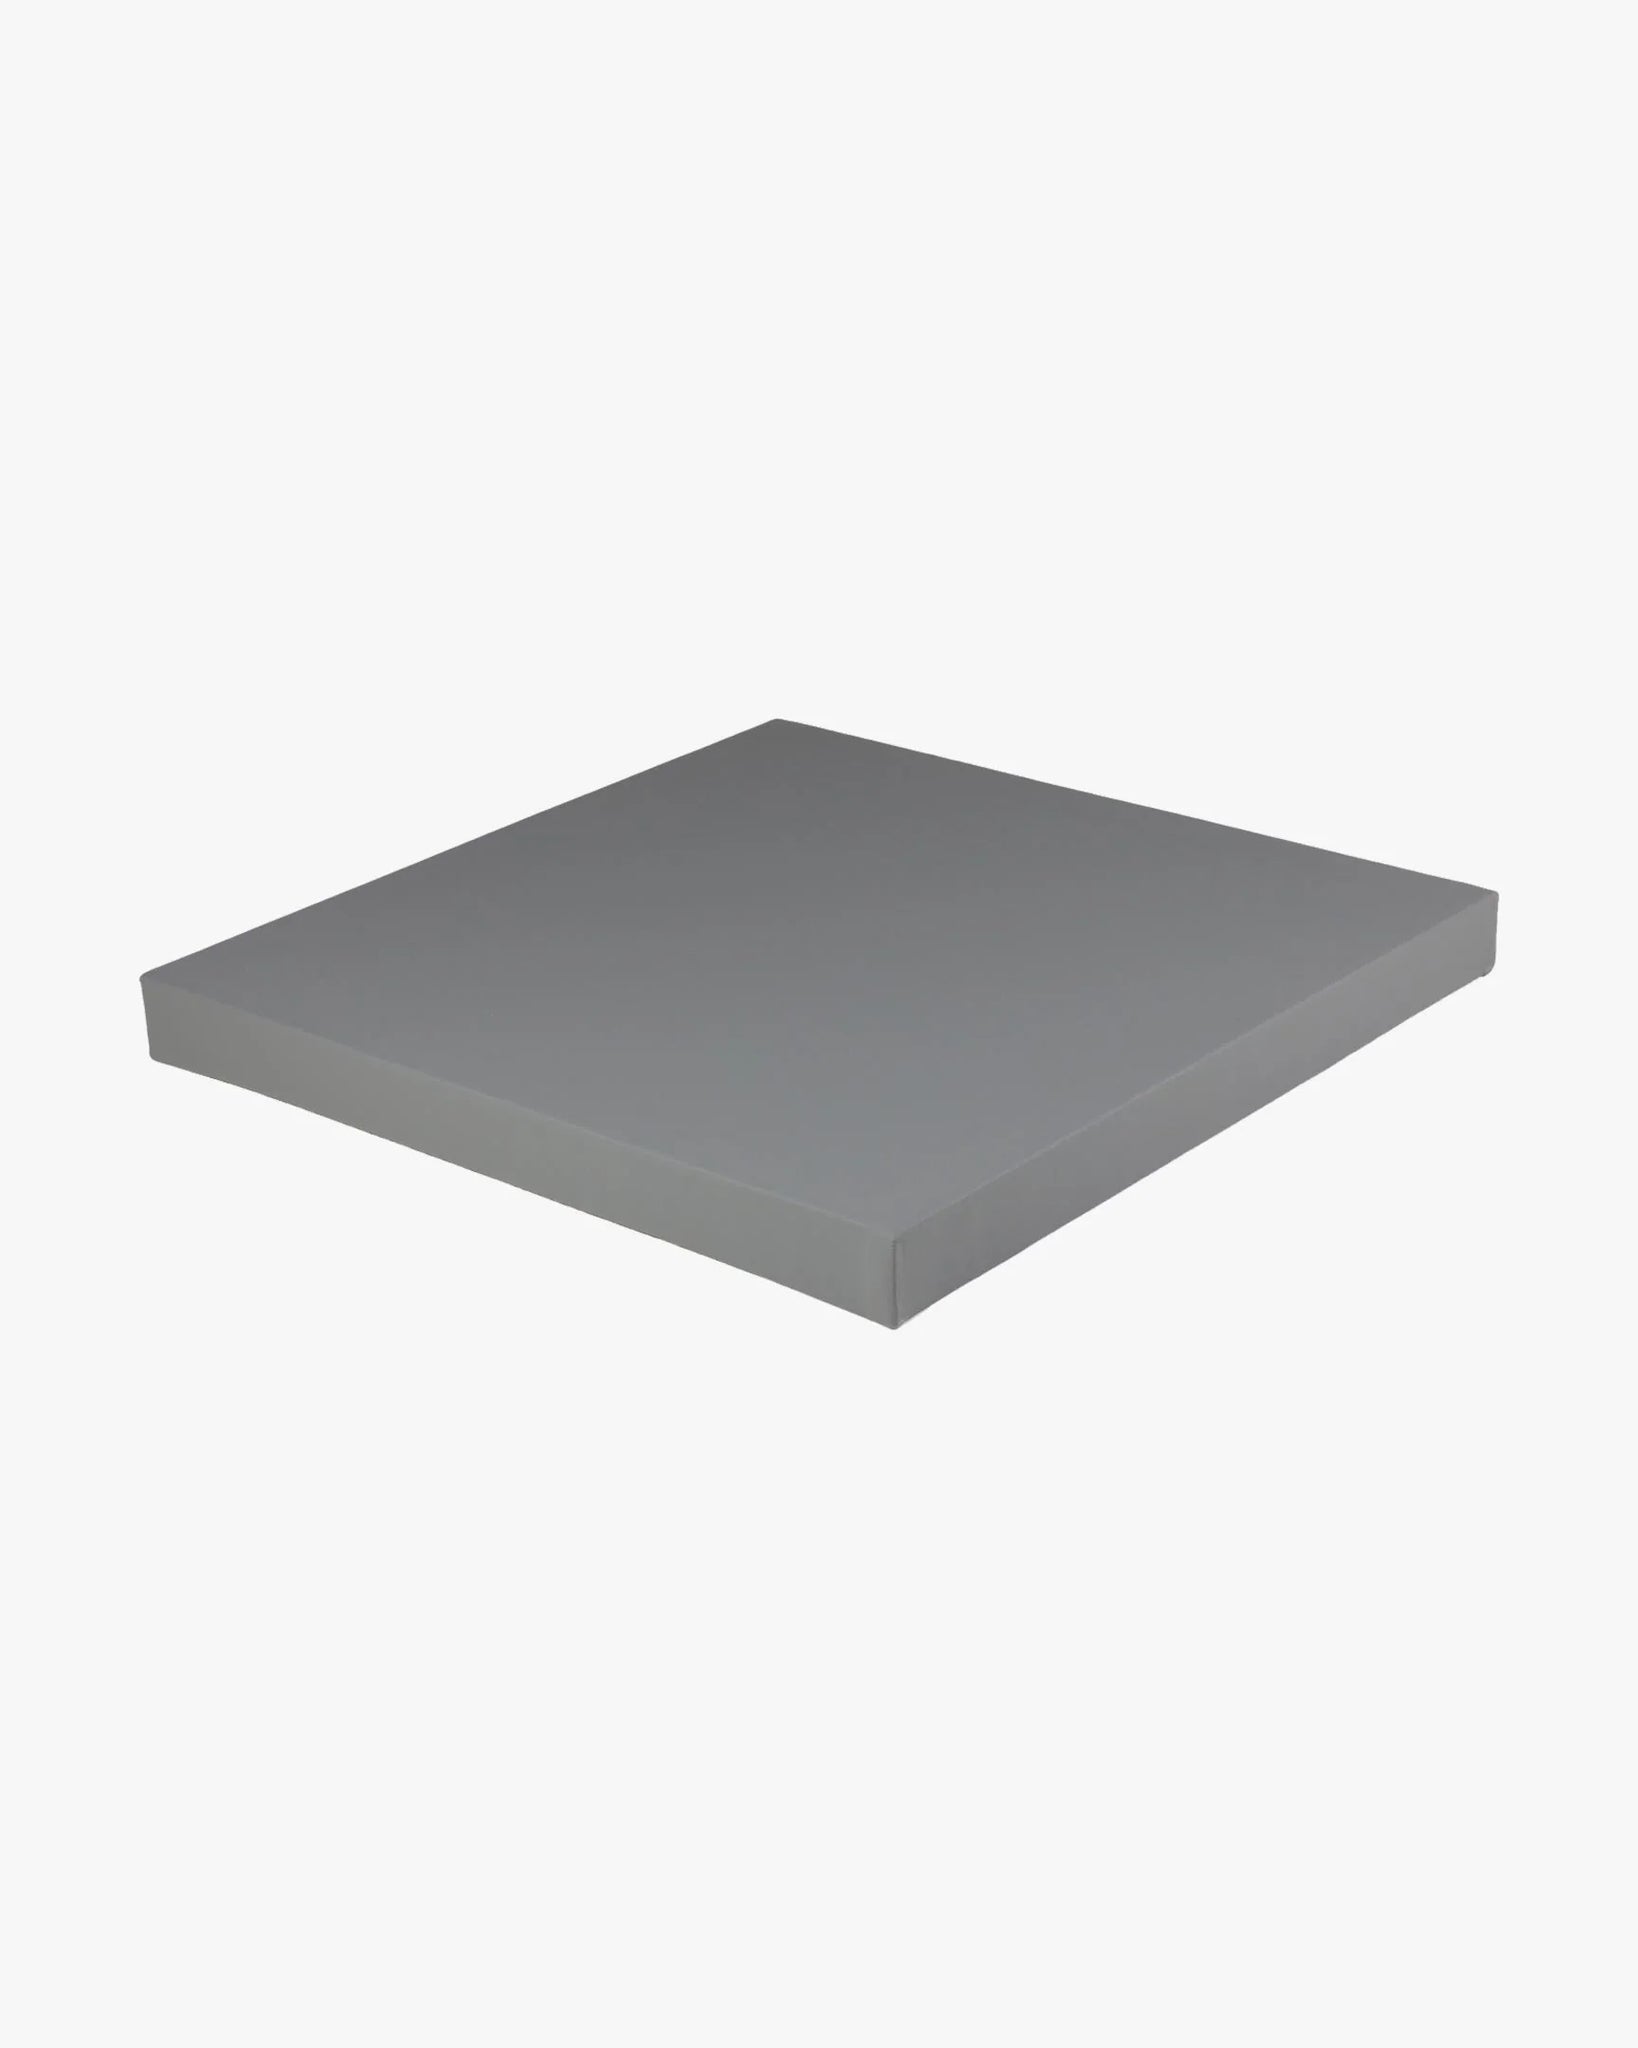 Smooth Tile Mat 1m x 1m x 1.5" Grey